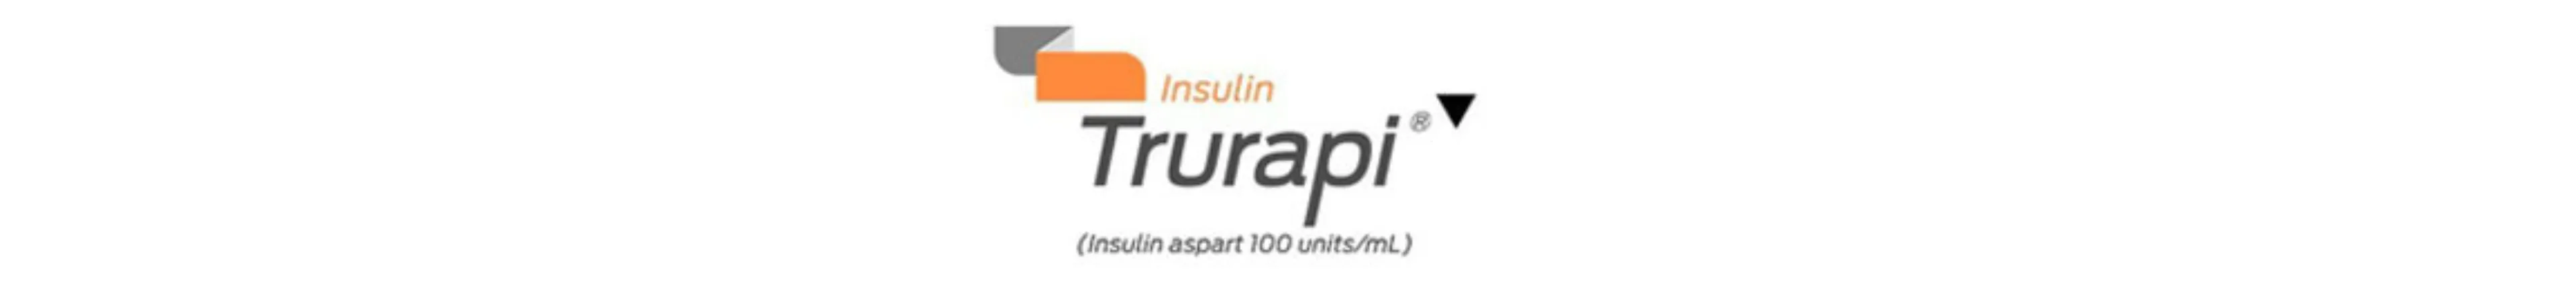 Insulin Trurapi (Insulin aspart 100 units/mL)